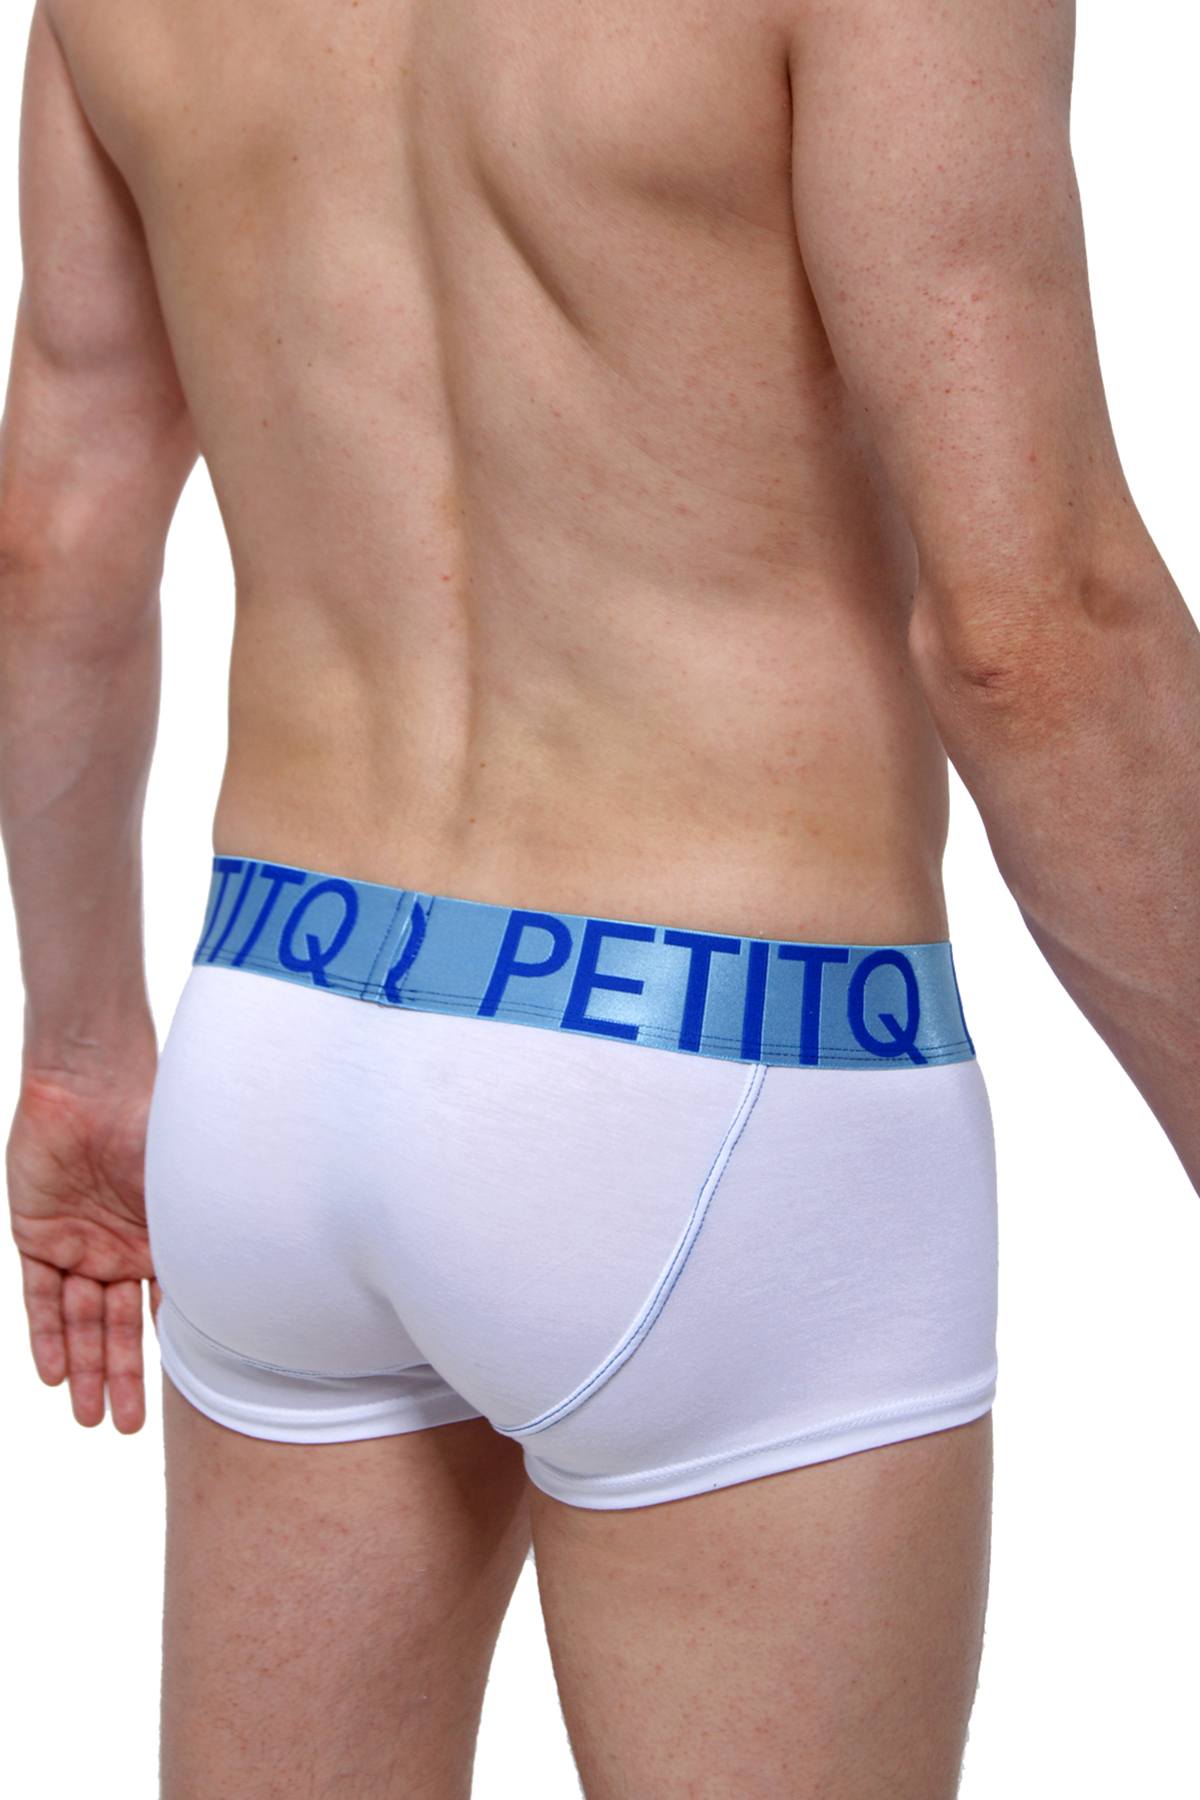 PetitQ White/Blue Mega Bulge Trunk